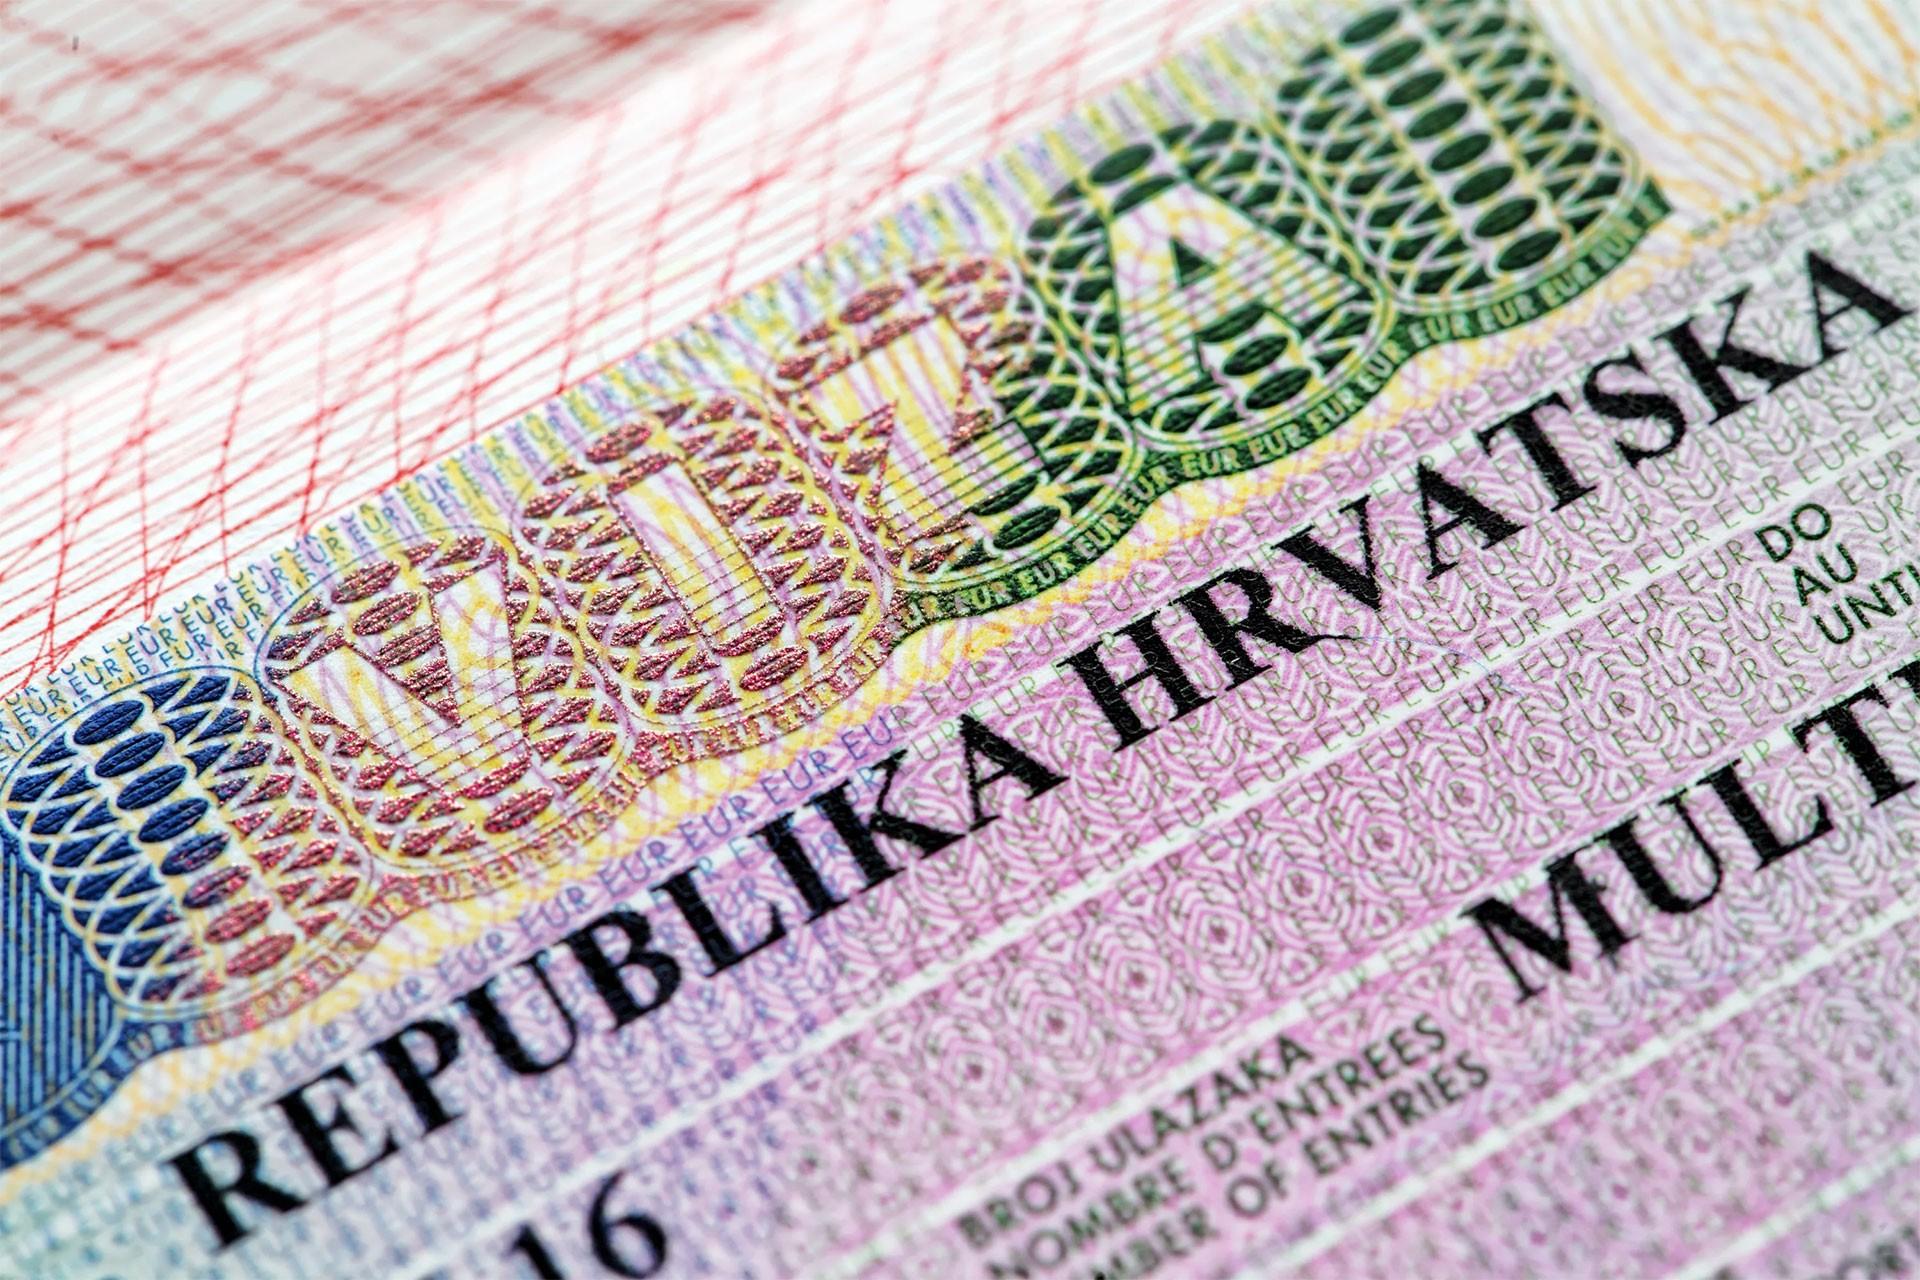 Виза в хорватию для россиян, нужна ли в 2020 и въезд по шенгену, сколько стоит и как получить самостоятельно, оформление документов и анкет